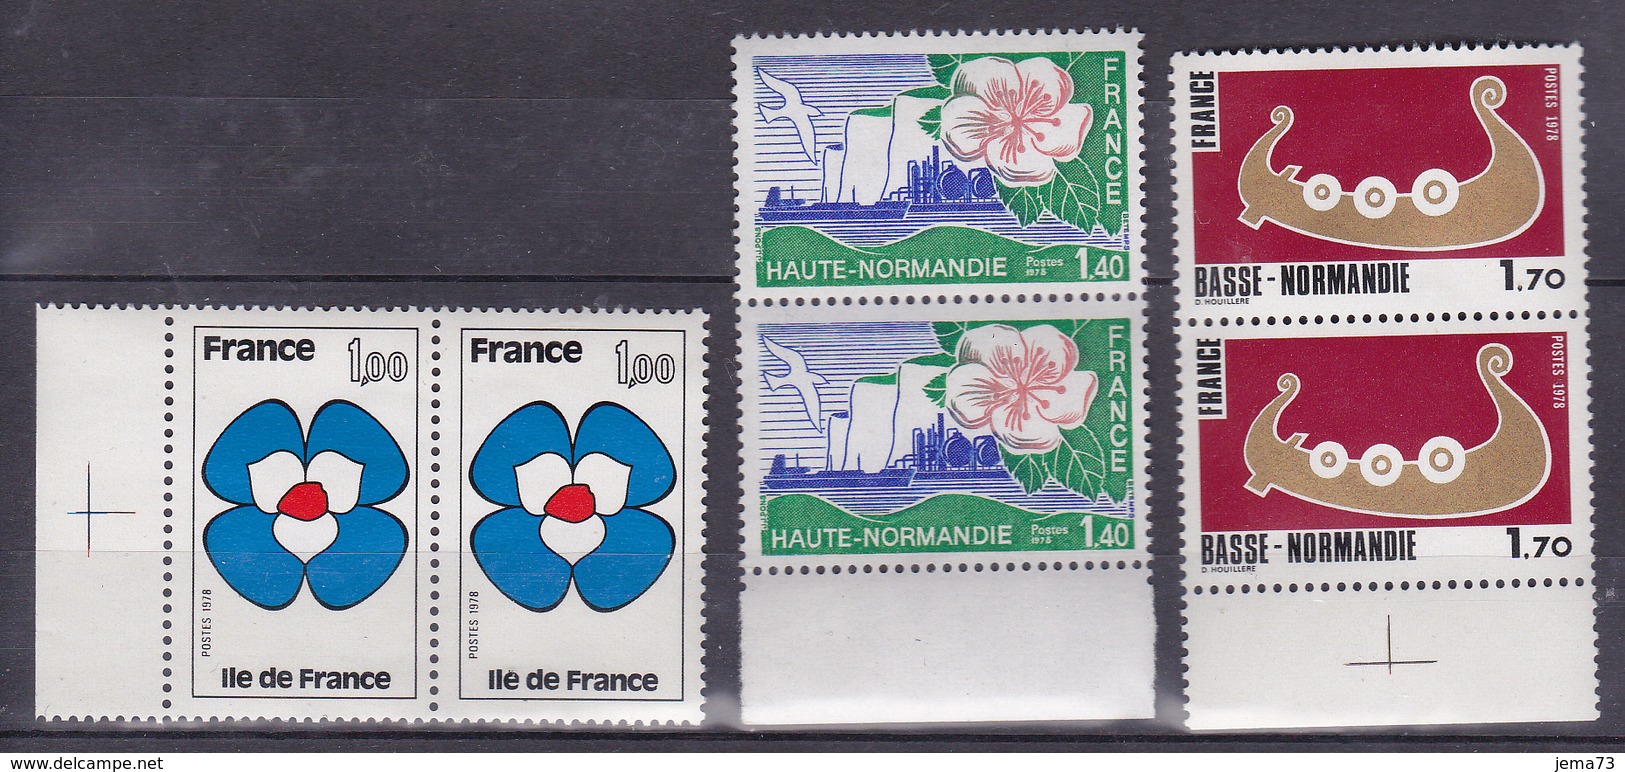 N° 1991 à 1993 Série Régions Ile-de-France Haute Normandie Basse Normandie: Série En Paire De 2 Timbres Neuf Impeccable - Nuovi